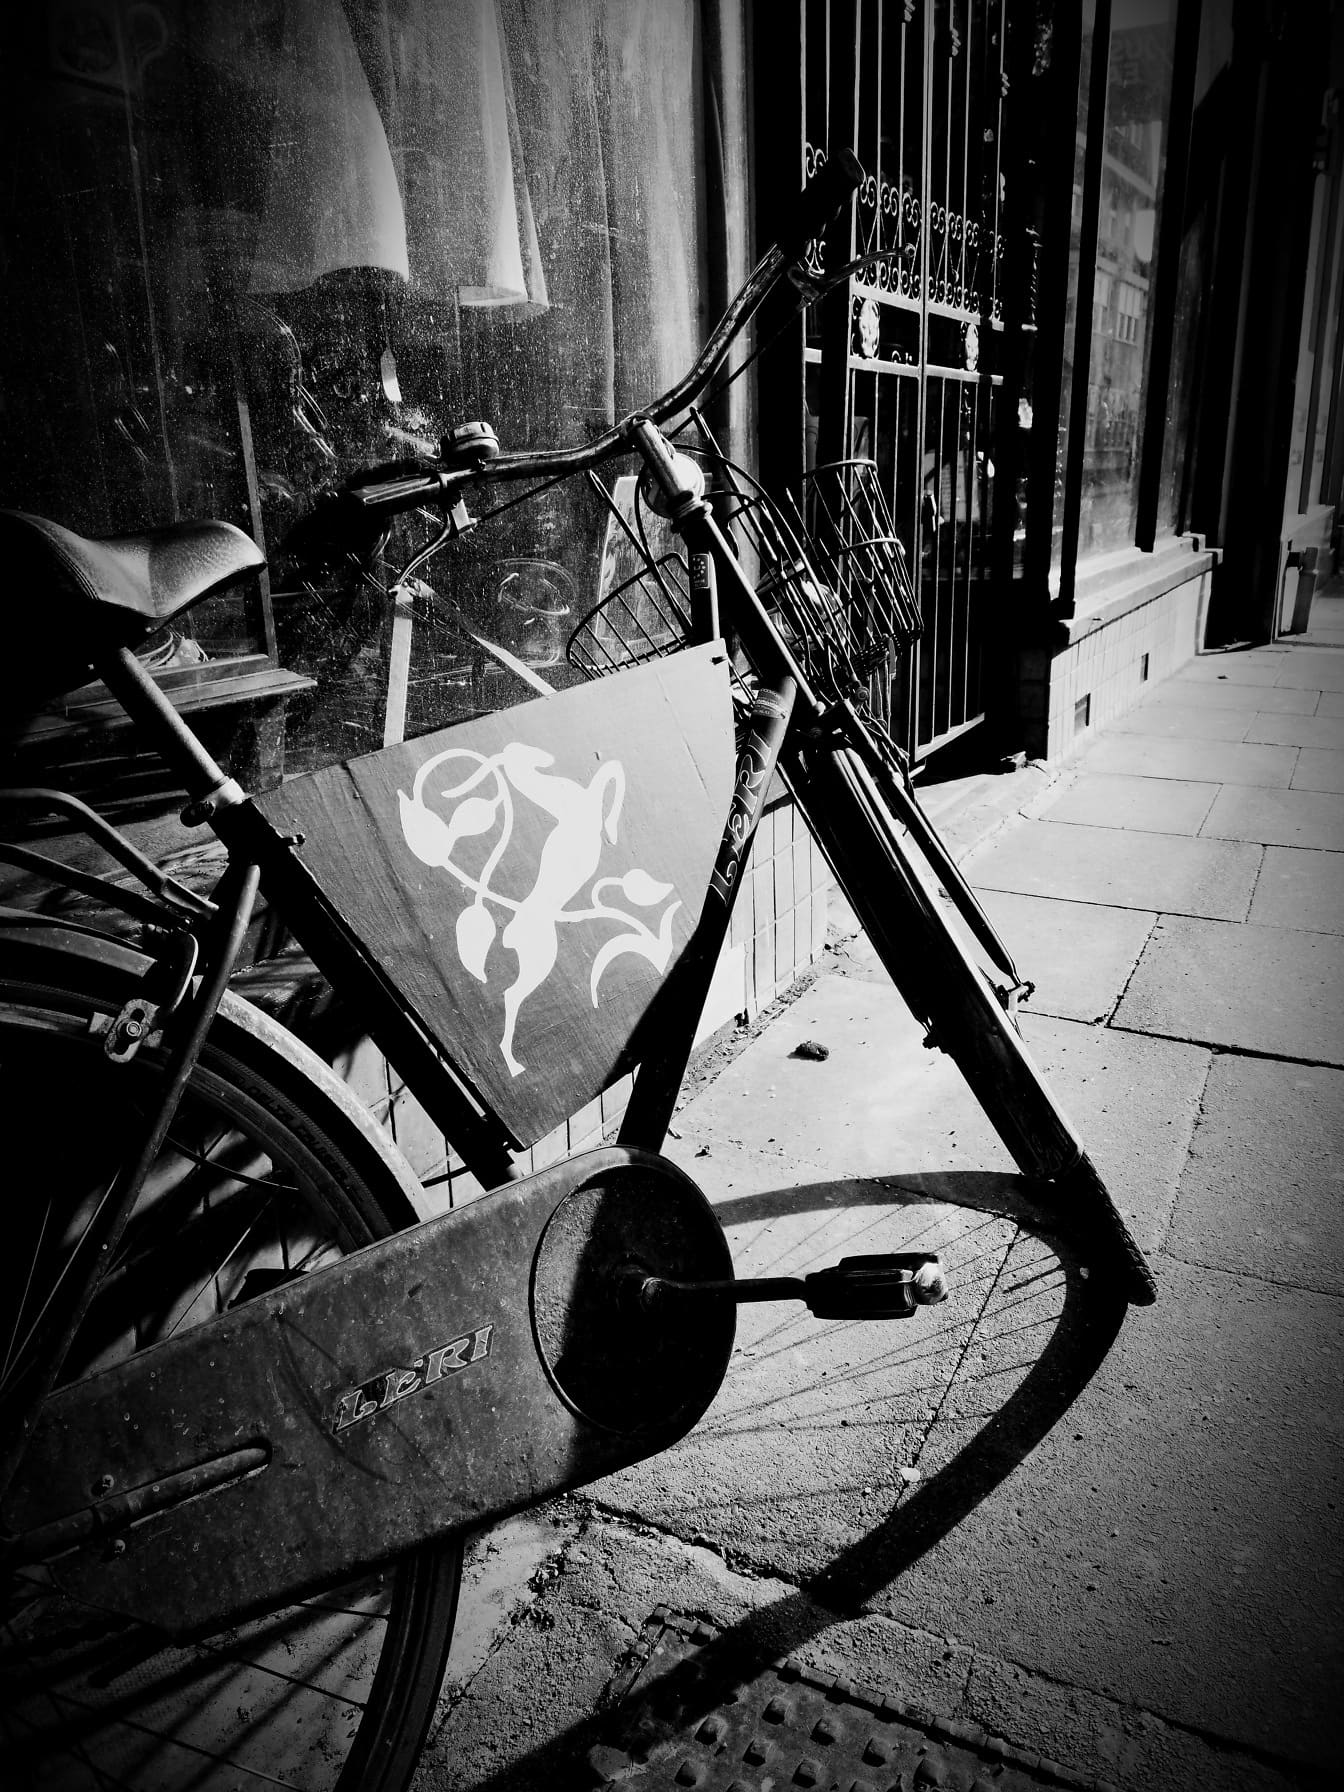 Xe đạp kiểu cũ với giỏ chụp ảnh đen trắng